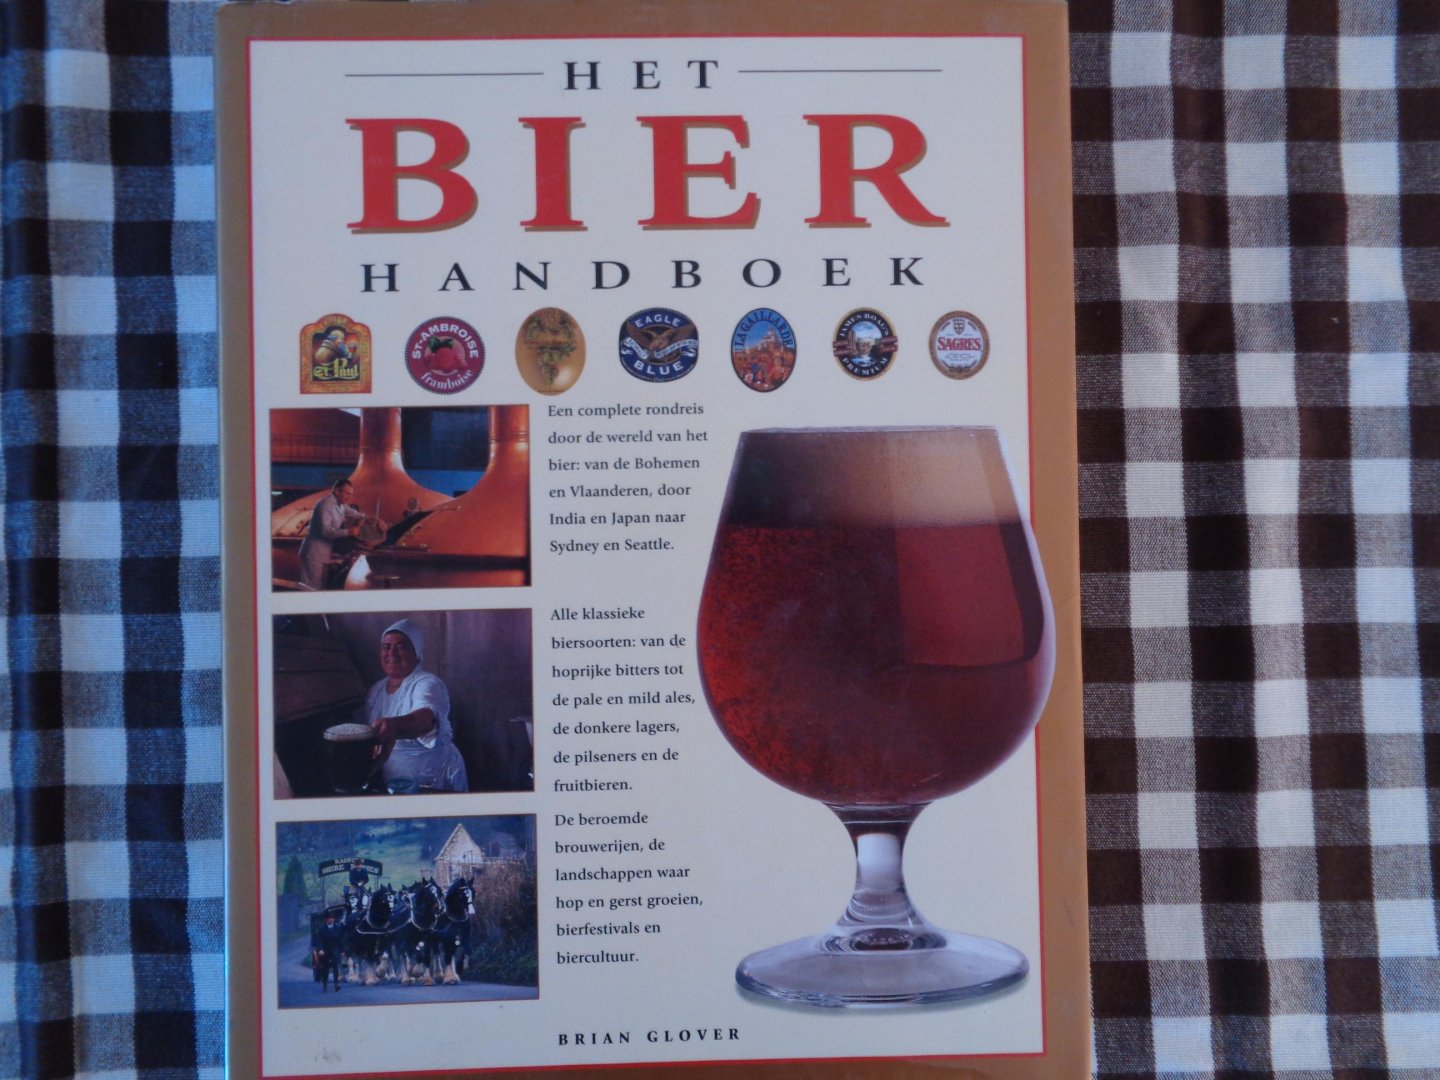 brian glover - Het bier handboek